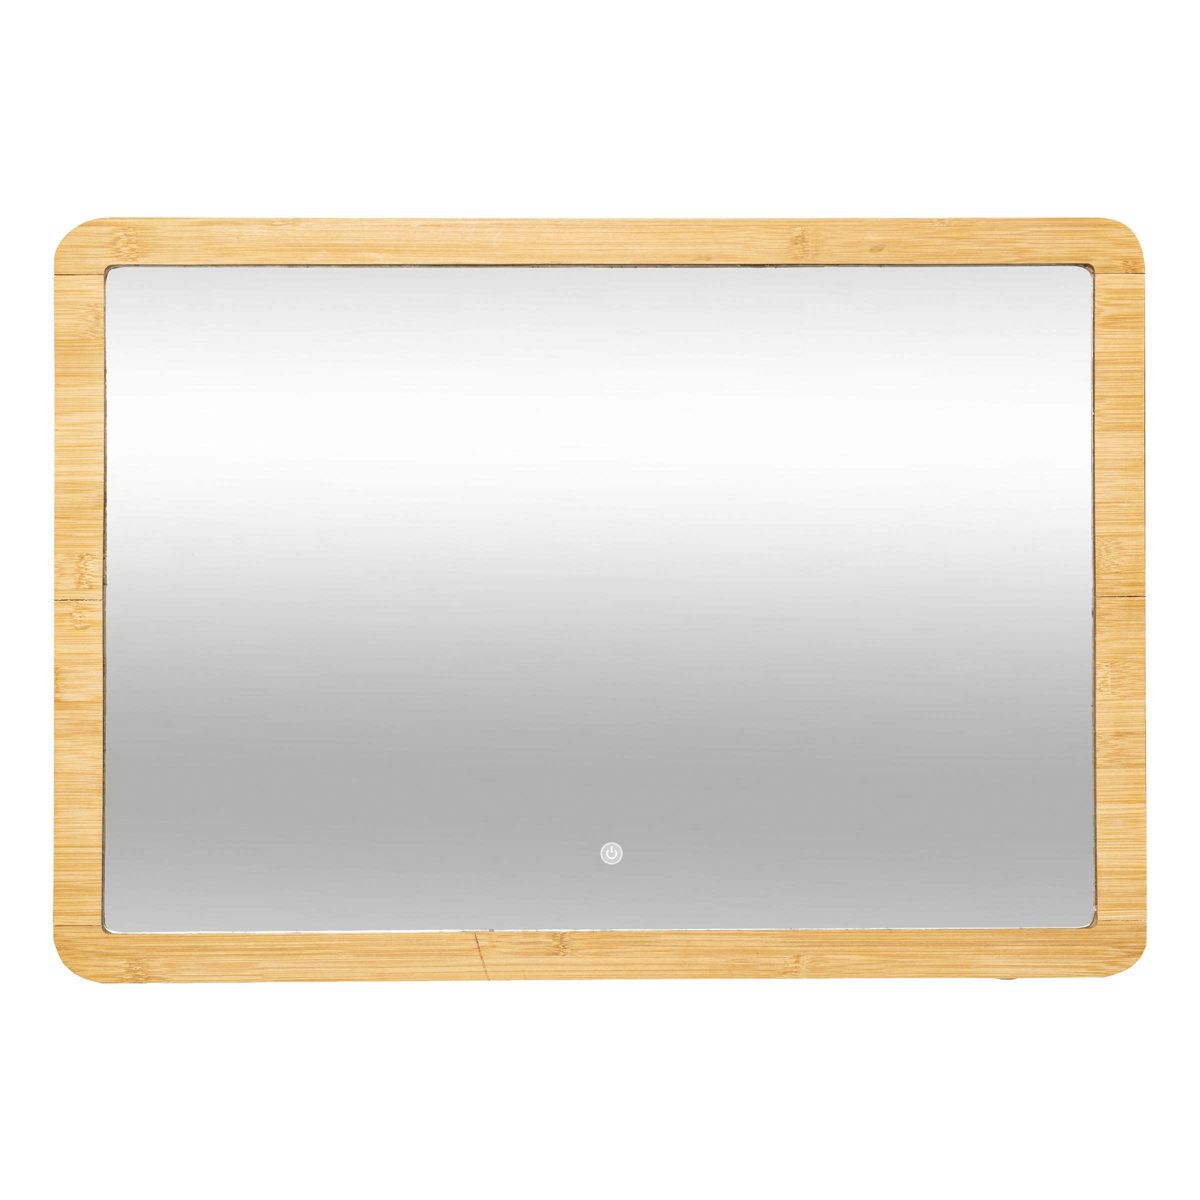 5five Simply Smart Koupelnové zrcadlo s LED podsvícením, bambusový rám, 47 x 66 cm - EDAXO.CZ s.r.o.